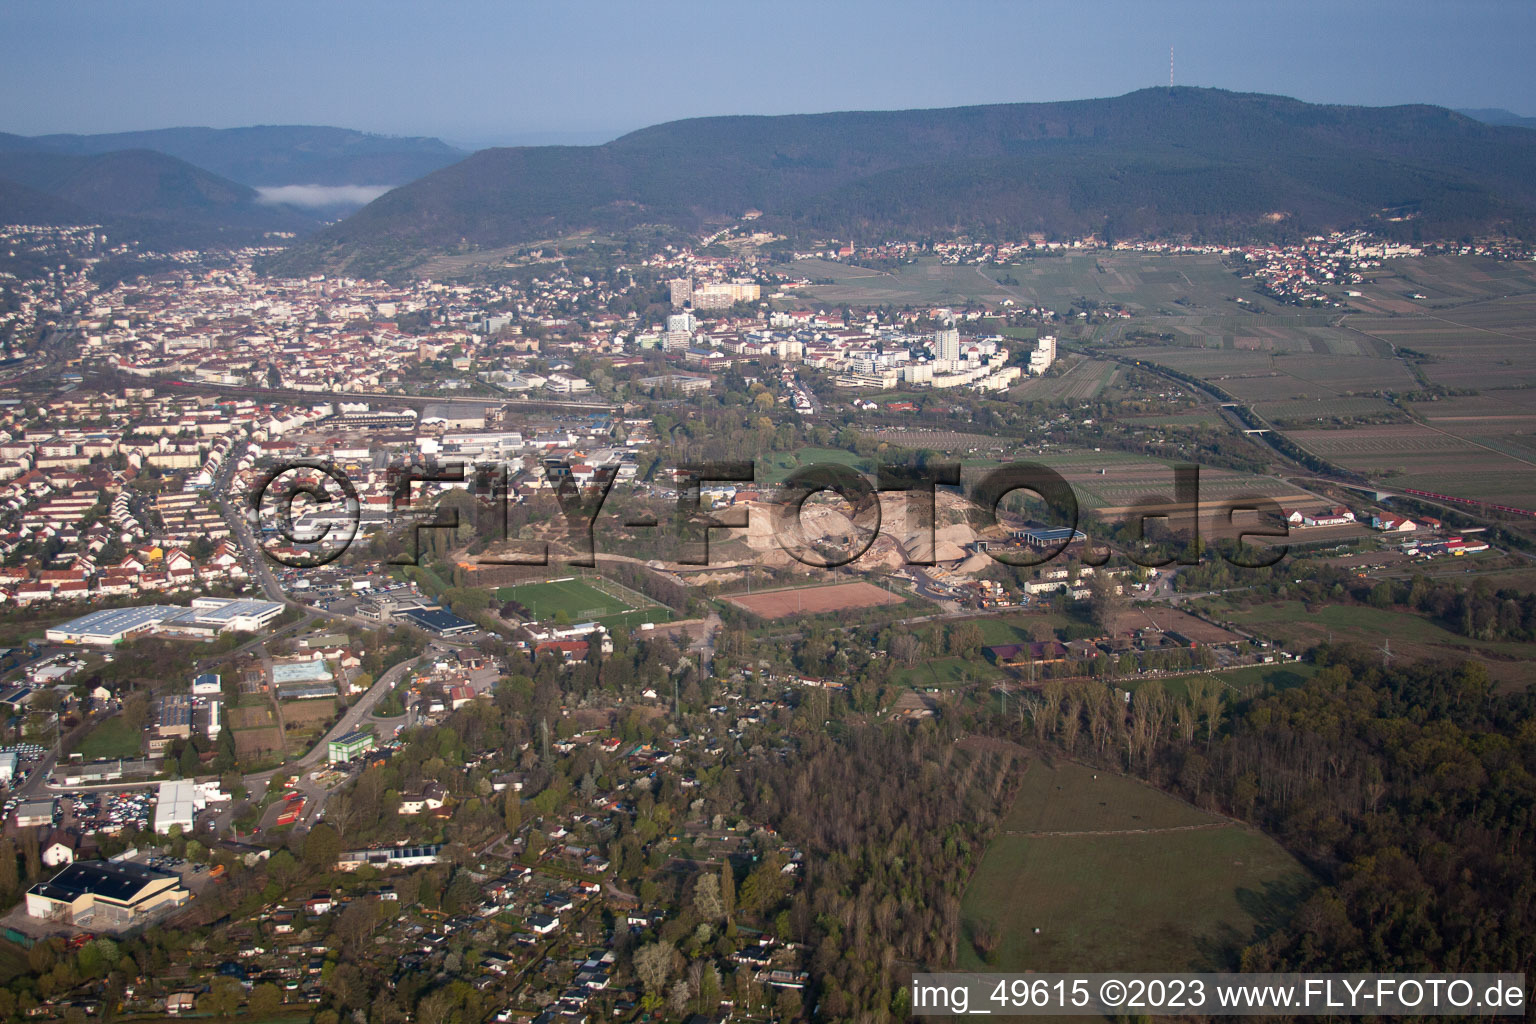 Neustadt an der Weinstraße im Bundesland Rheinland-Pfalz, Deutschland aus der Luft betrachtet